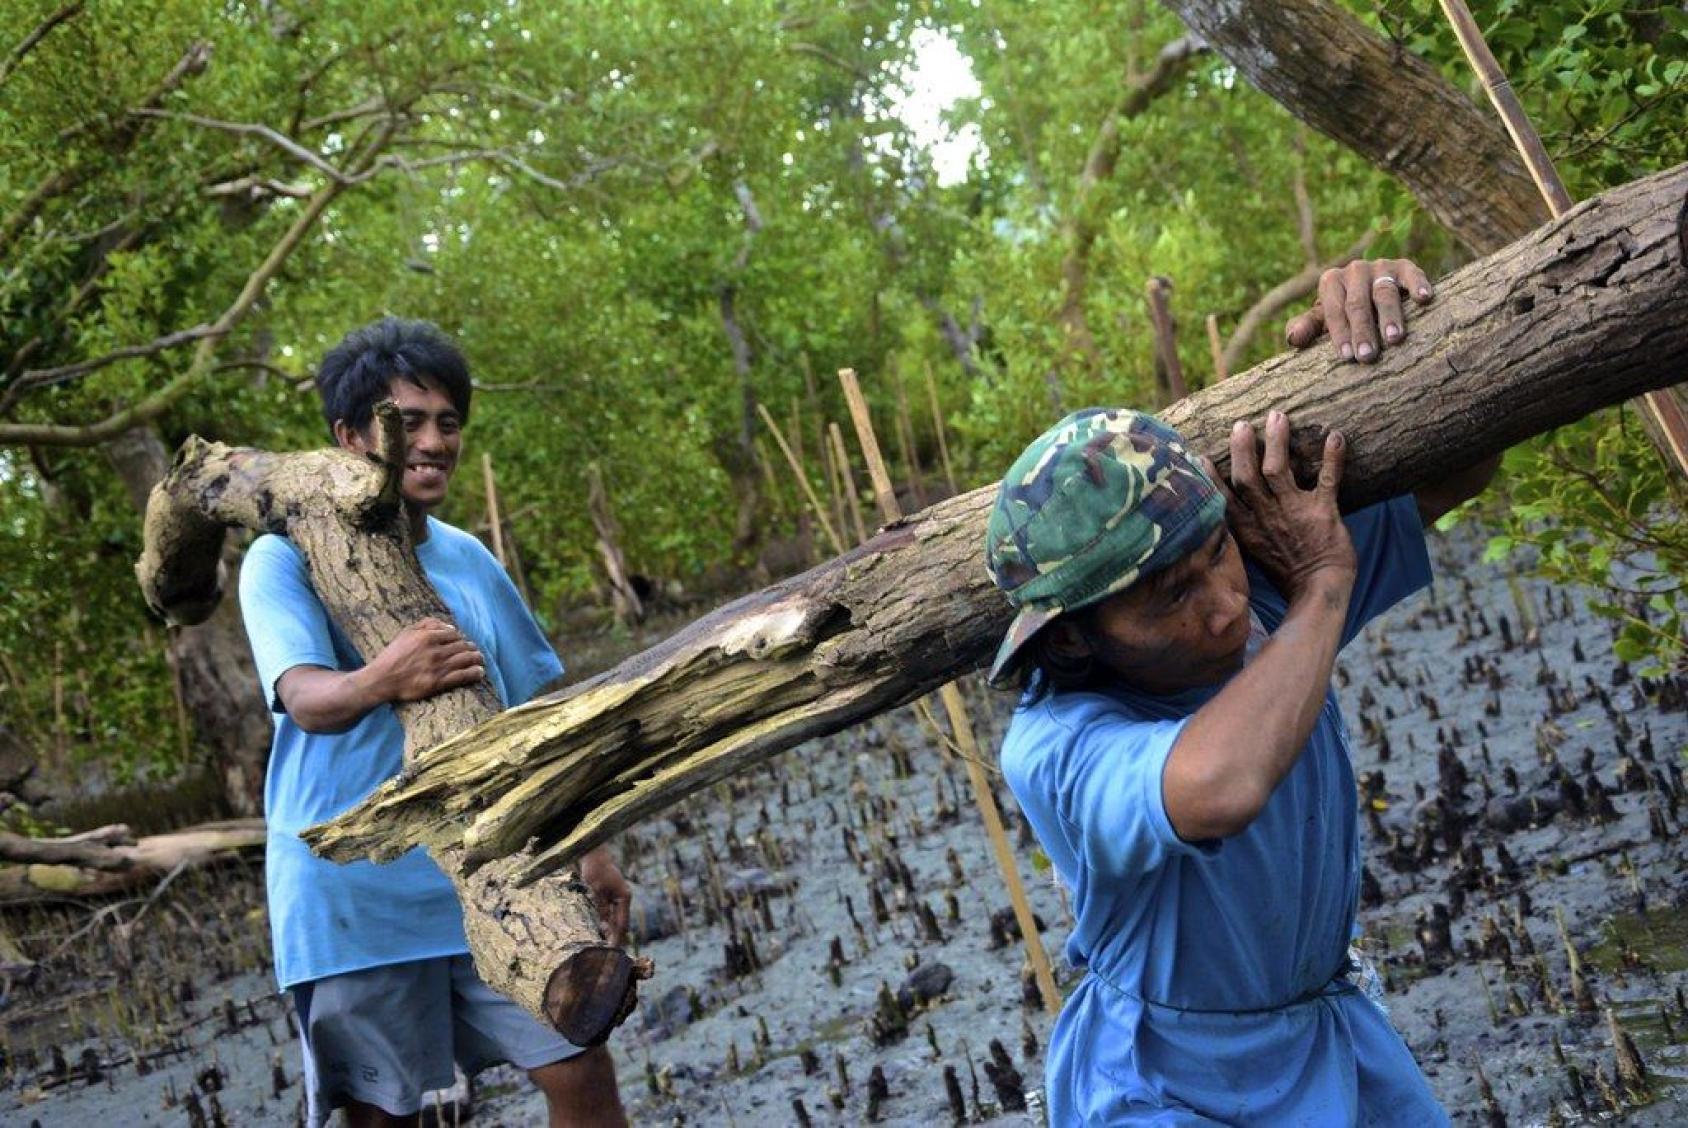 两个人抬着一根大木头穿过沼泽地。一个人微笑着把木头扛在肩上。